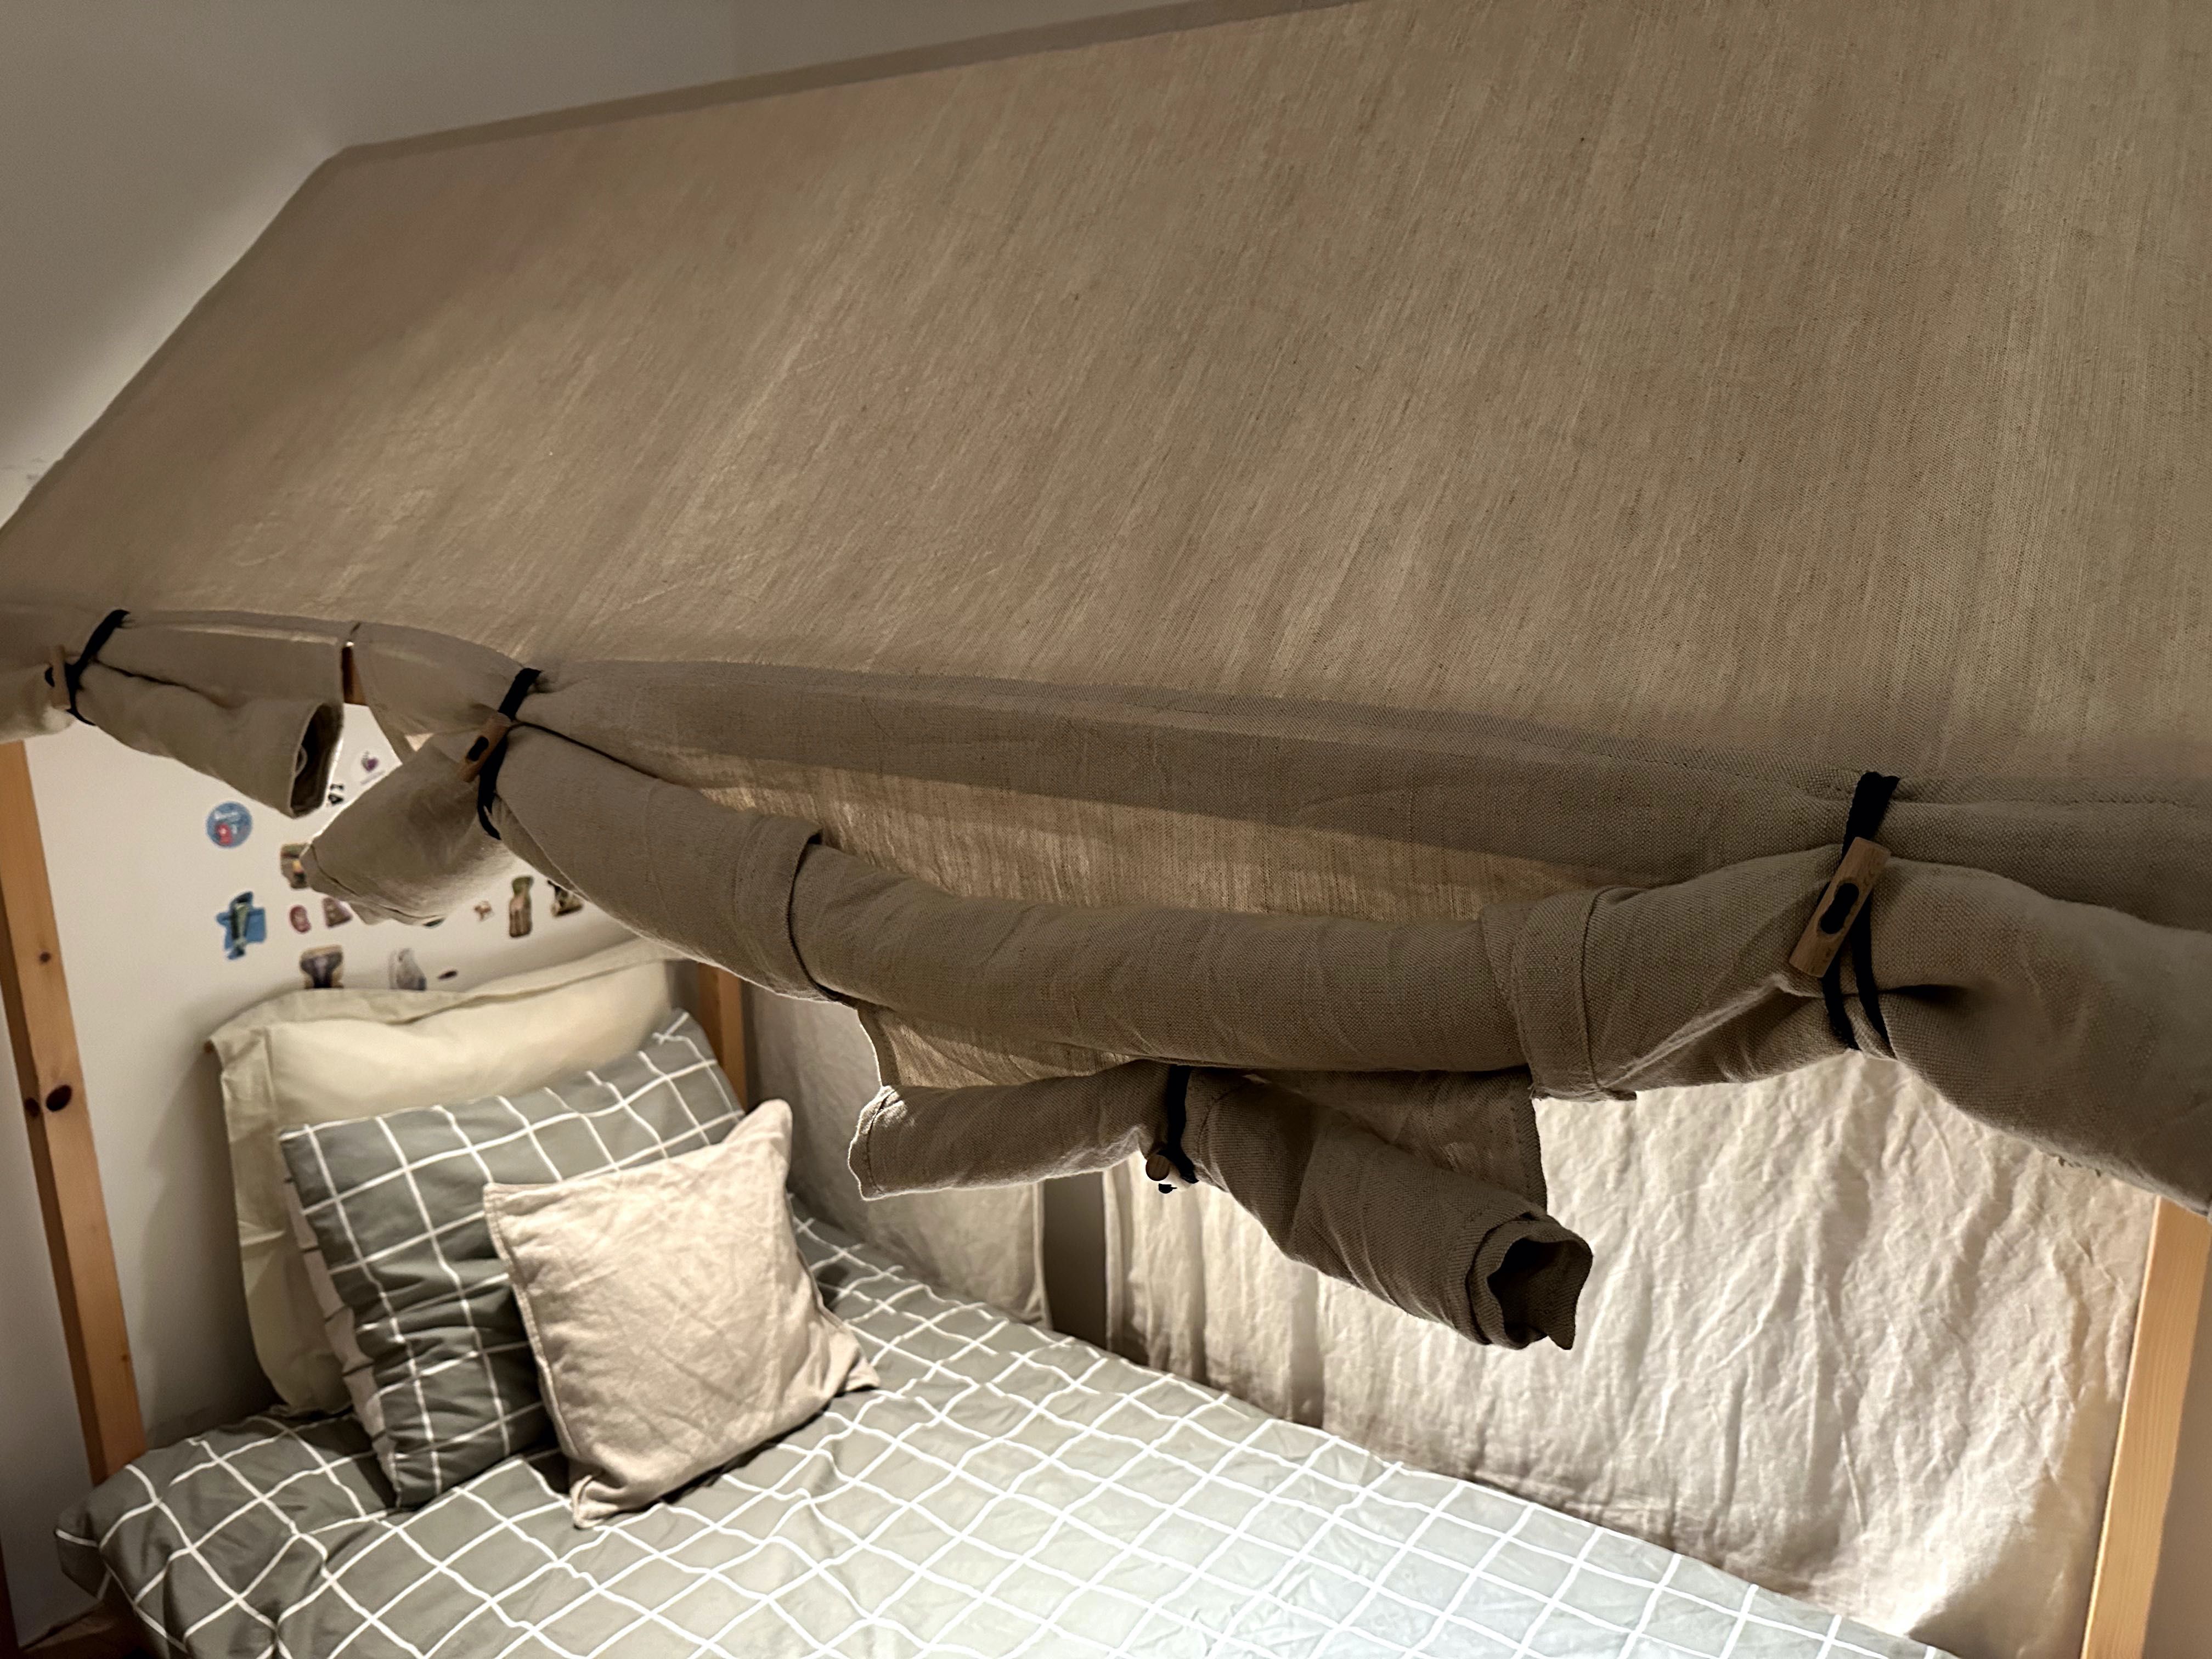 Łóżko - domek dziecięce z pokryciem i materacem.